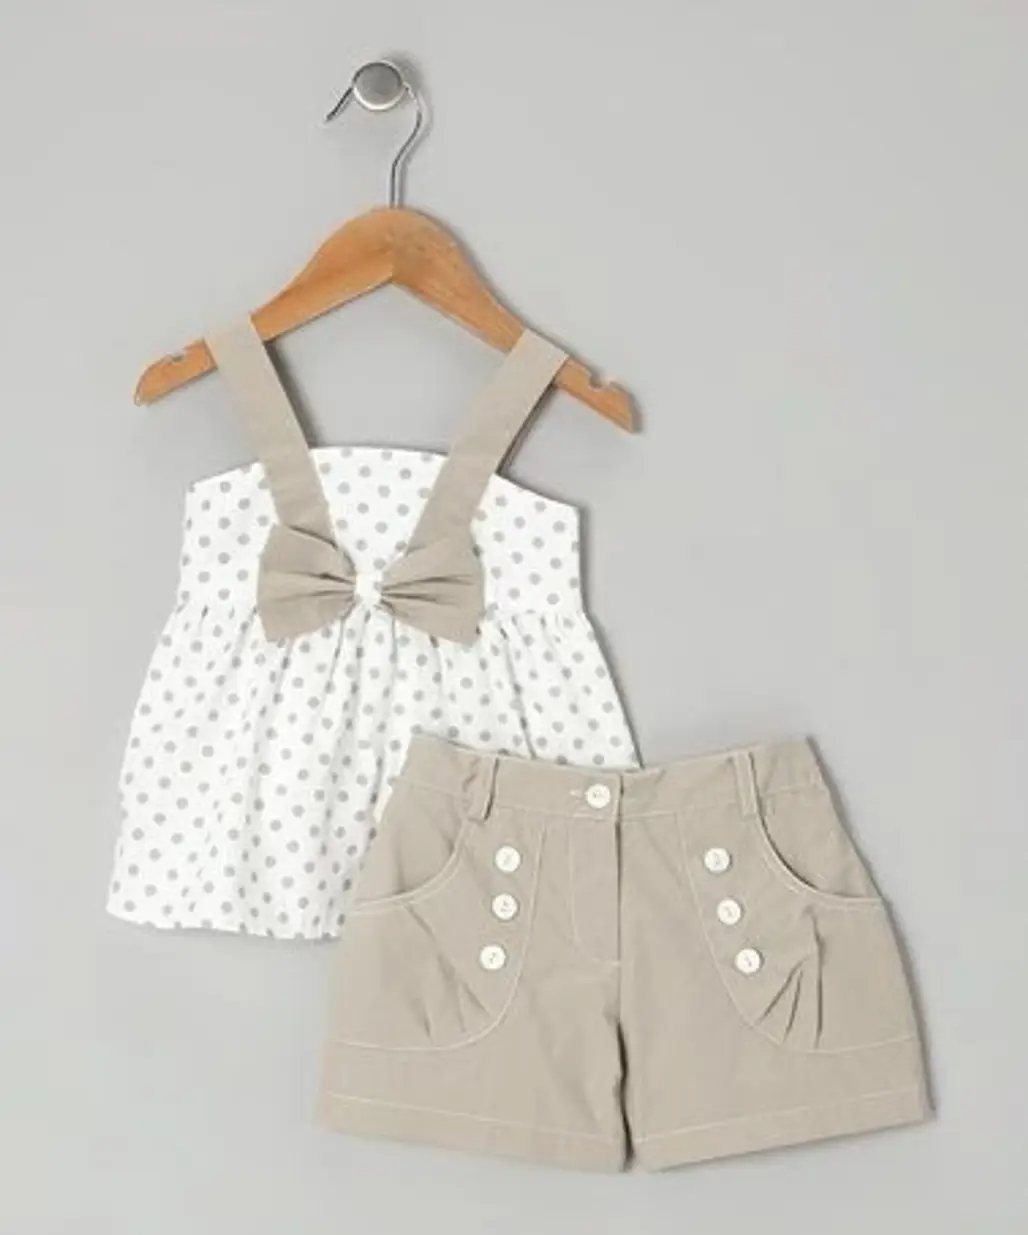 White Polka Dot Top and Gray Shorts